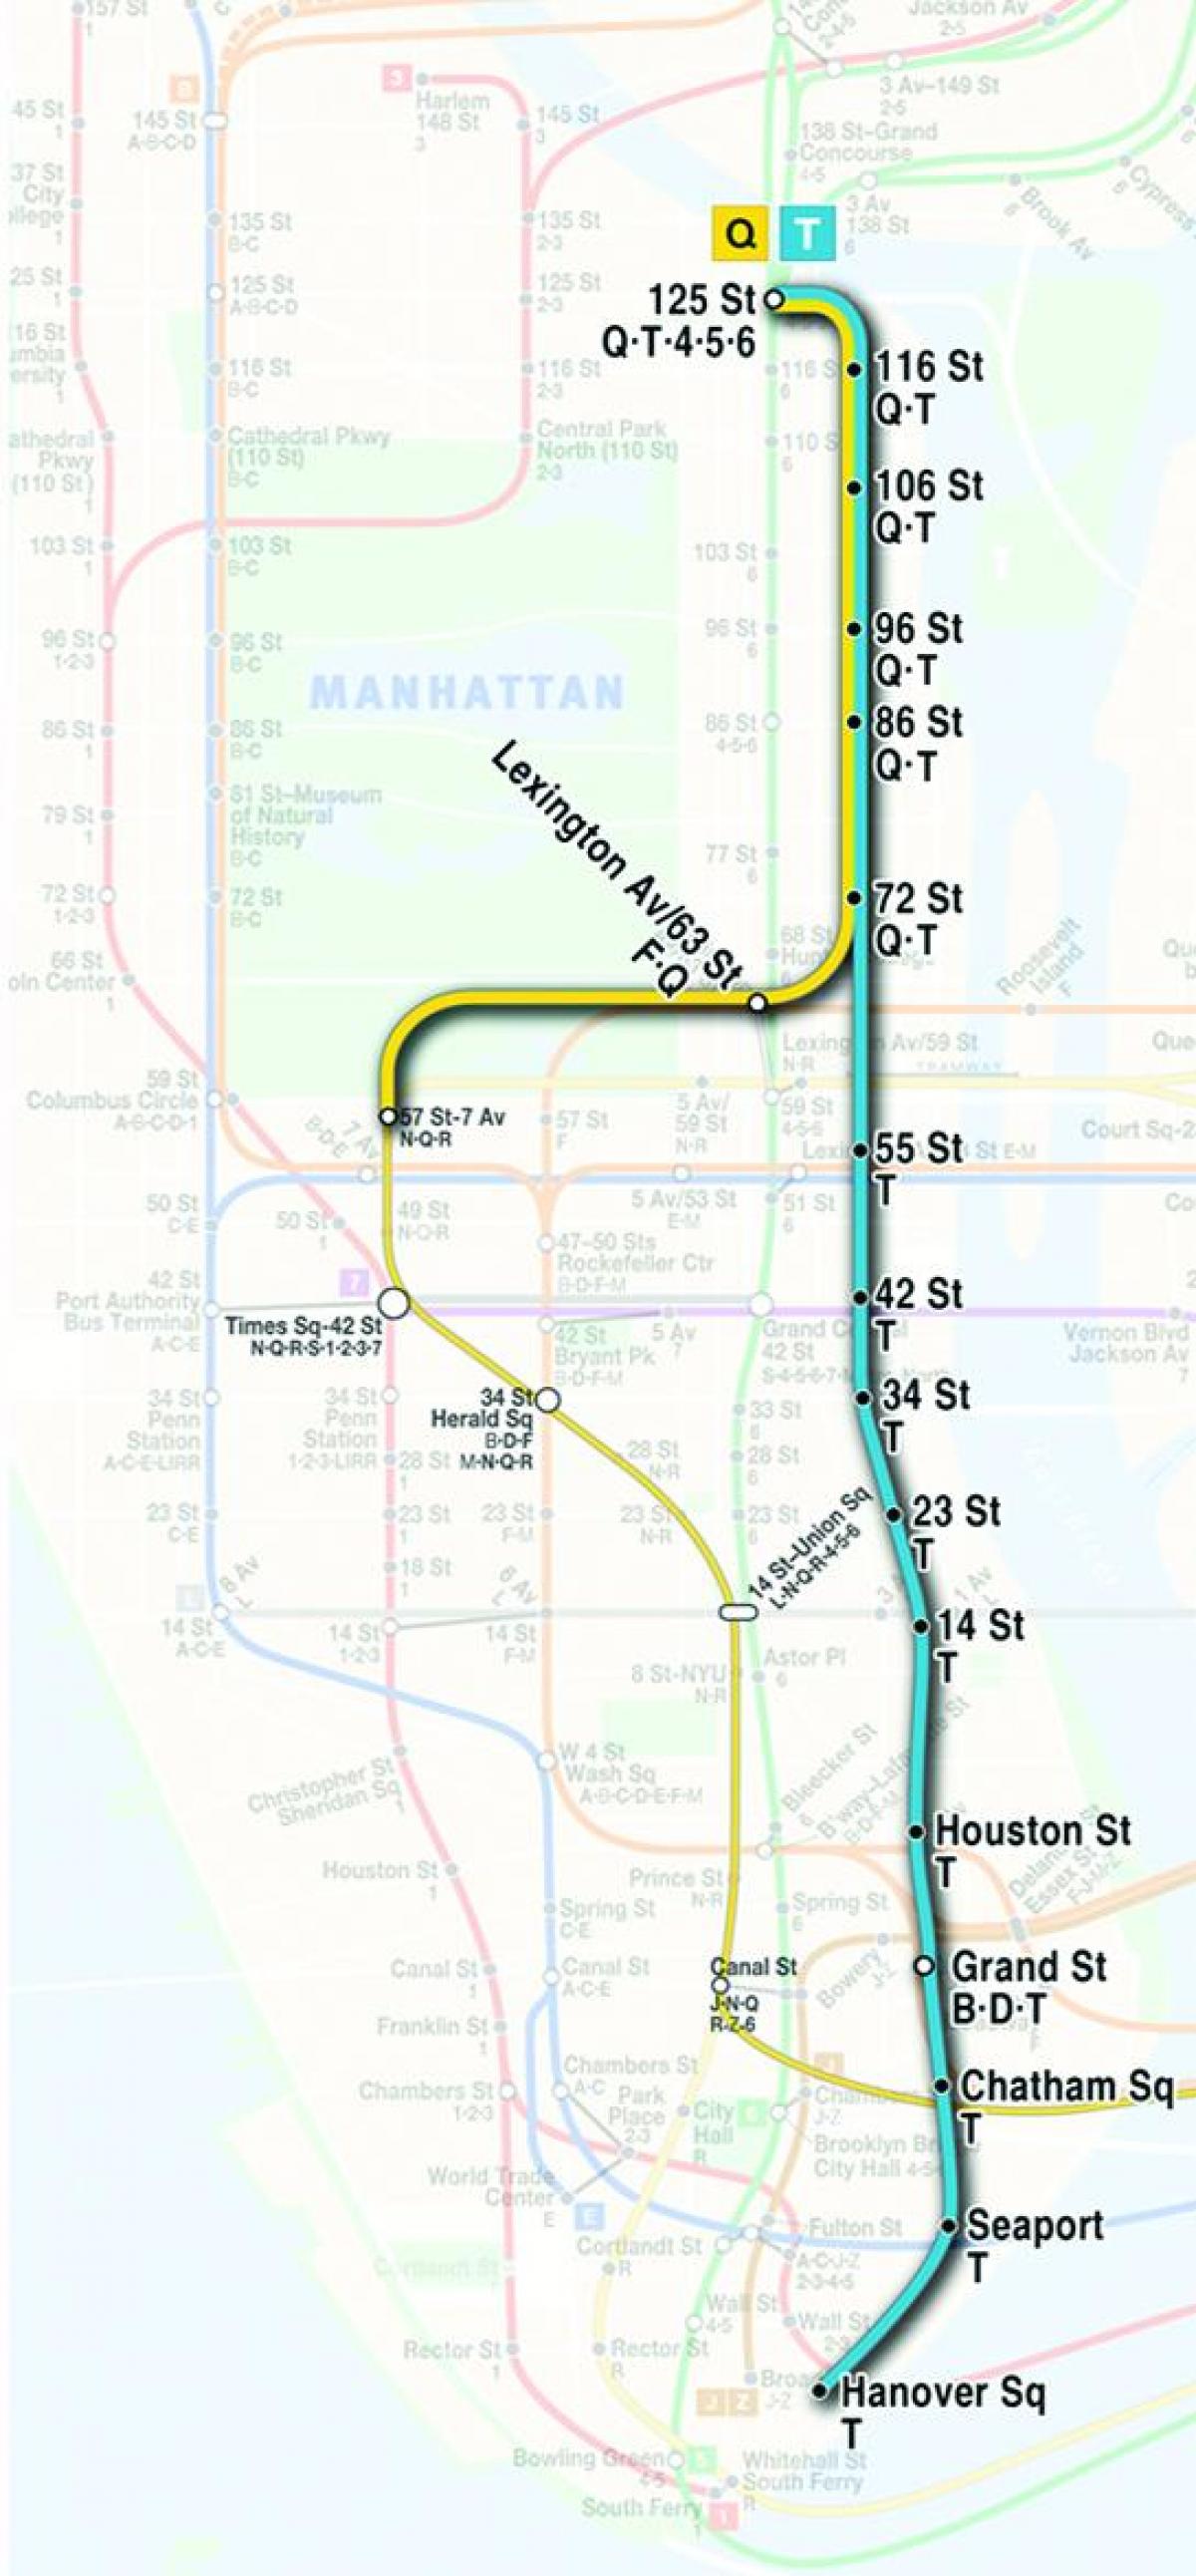 kaart teise avenue subway